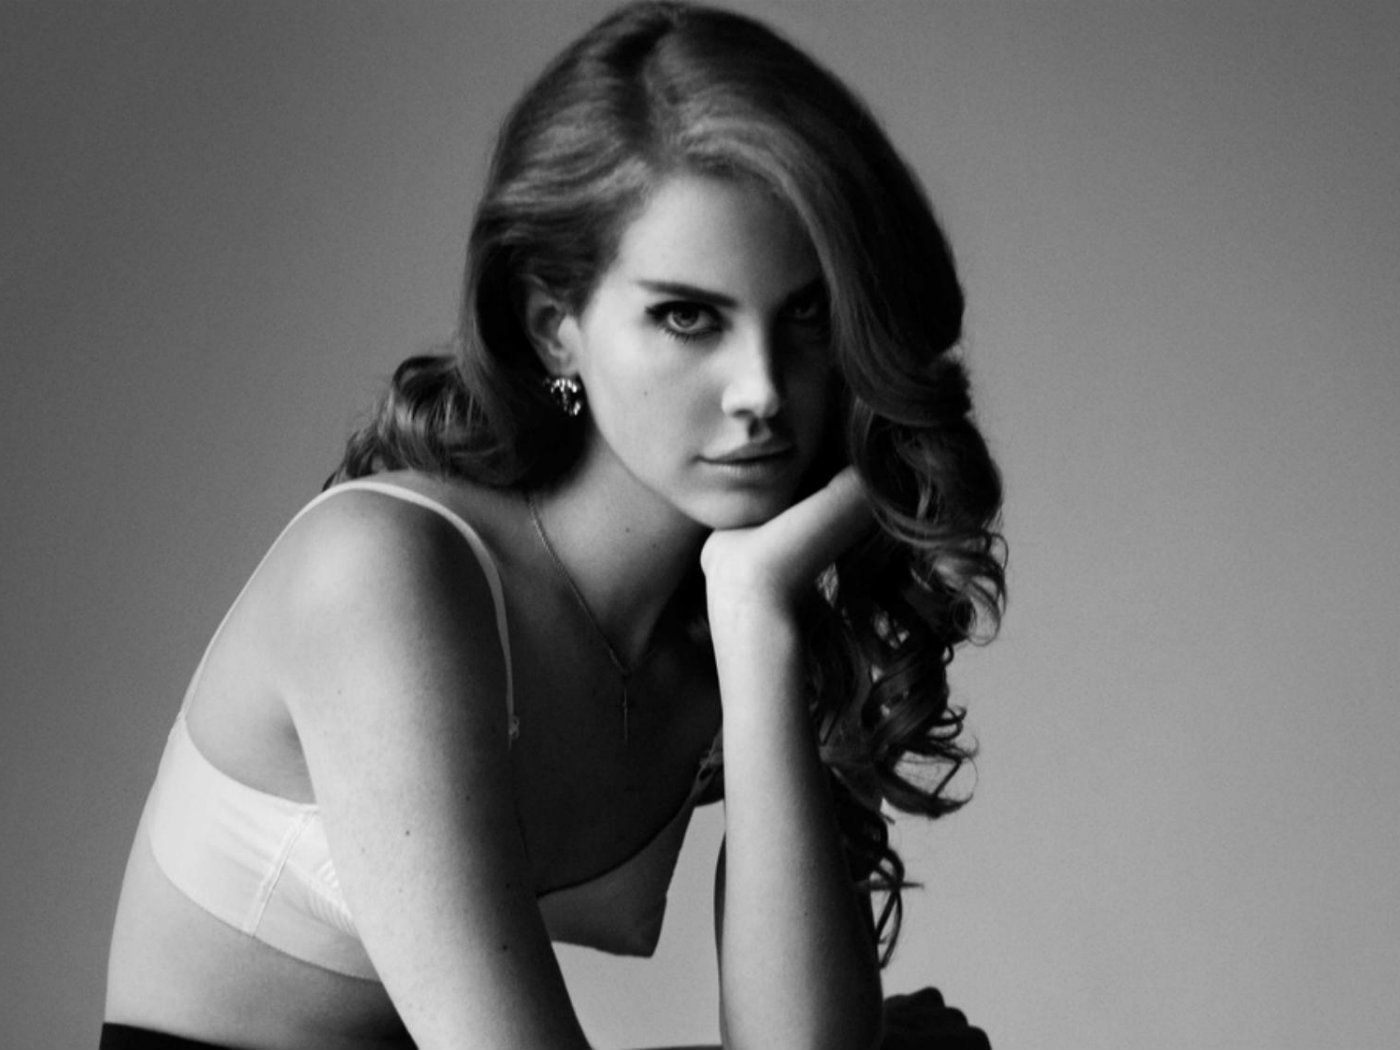 Lana Del Rey revela que “Cola” está inspirada en el tipo de “Harvey Weinstein y Harry Winston”. Cusica Plus.